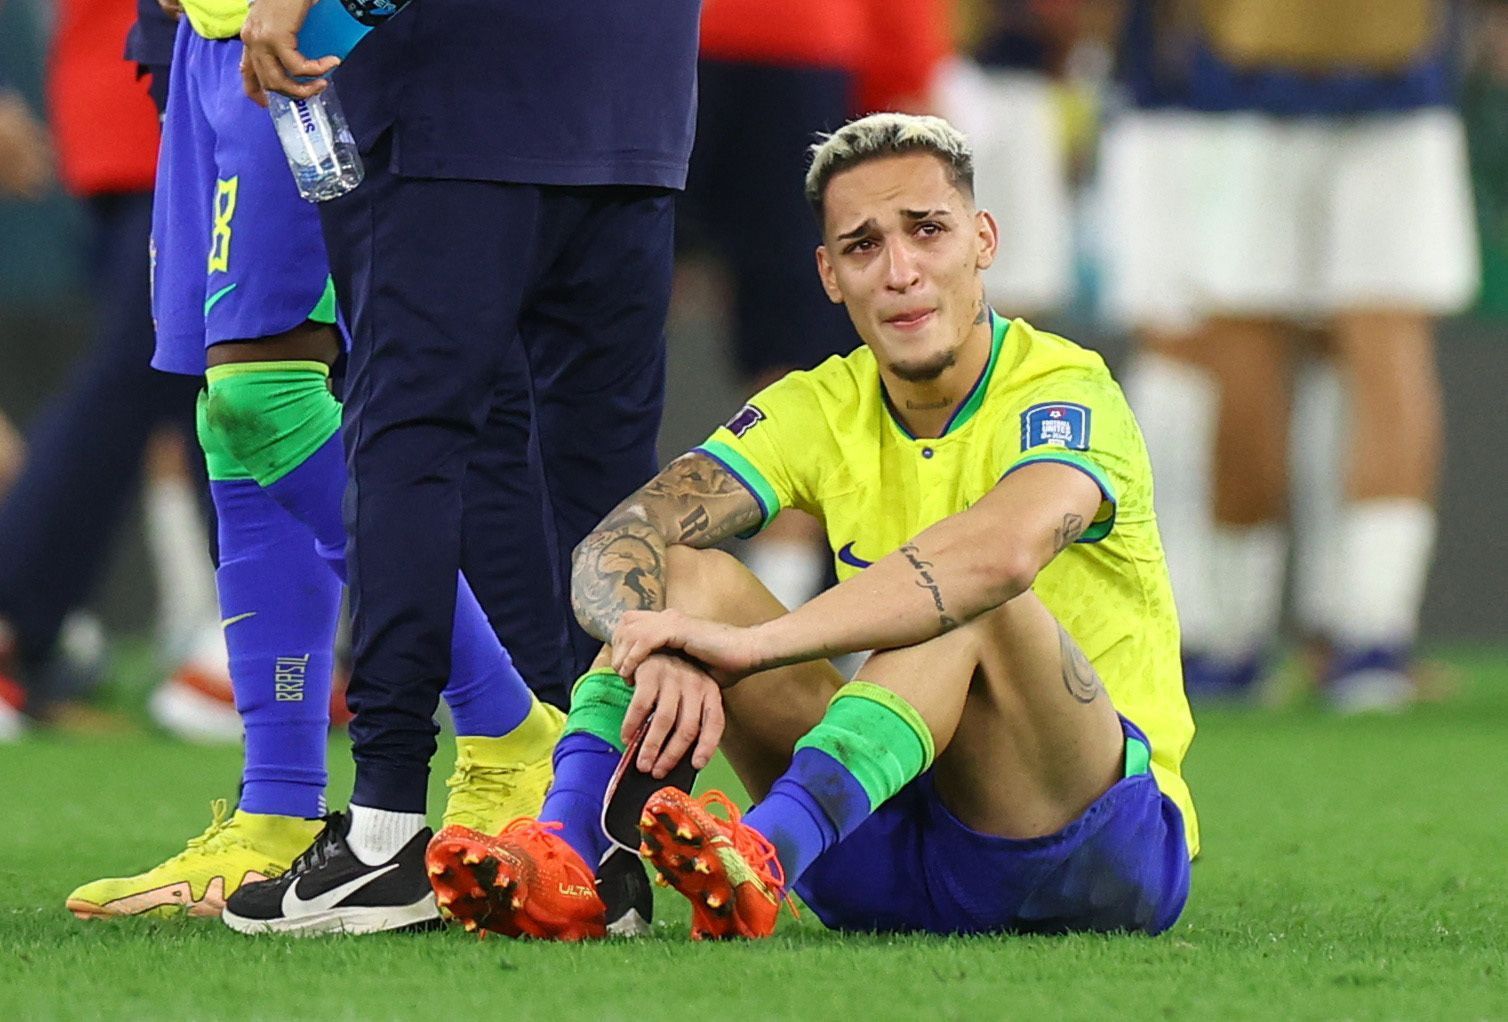 Smutný Antony po porážce ve čtvrtfinále MS 2022 Chorvatsko - Brazílie